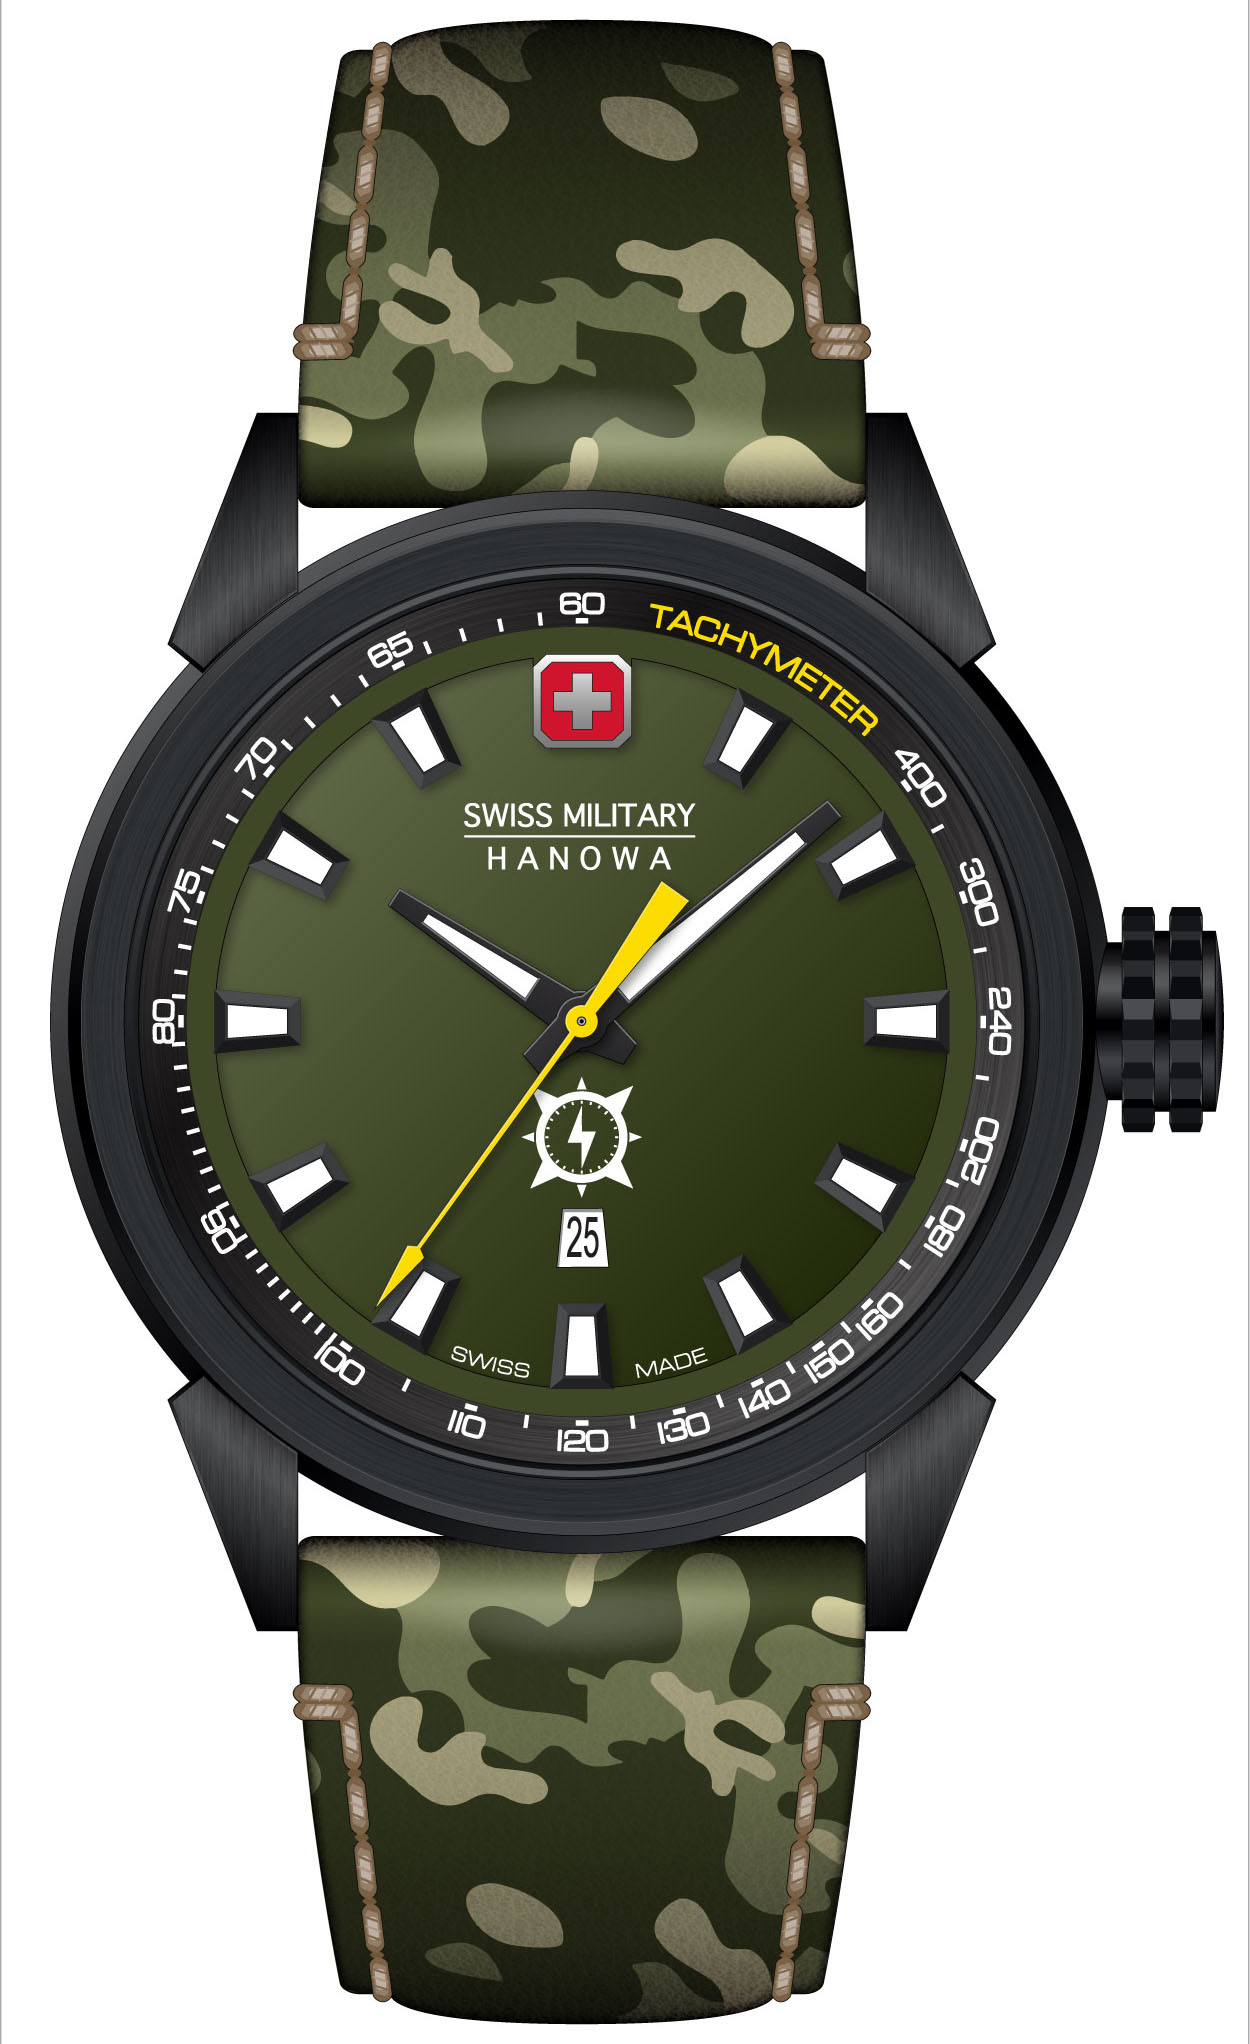 Swiss Military Hanowa Schweizer Uhr PLATOON NIGHT VISION, SMWGB2100130 günstig online kaufen